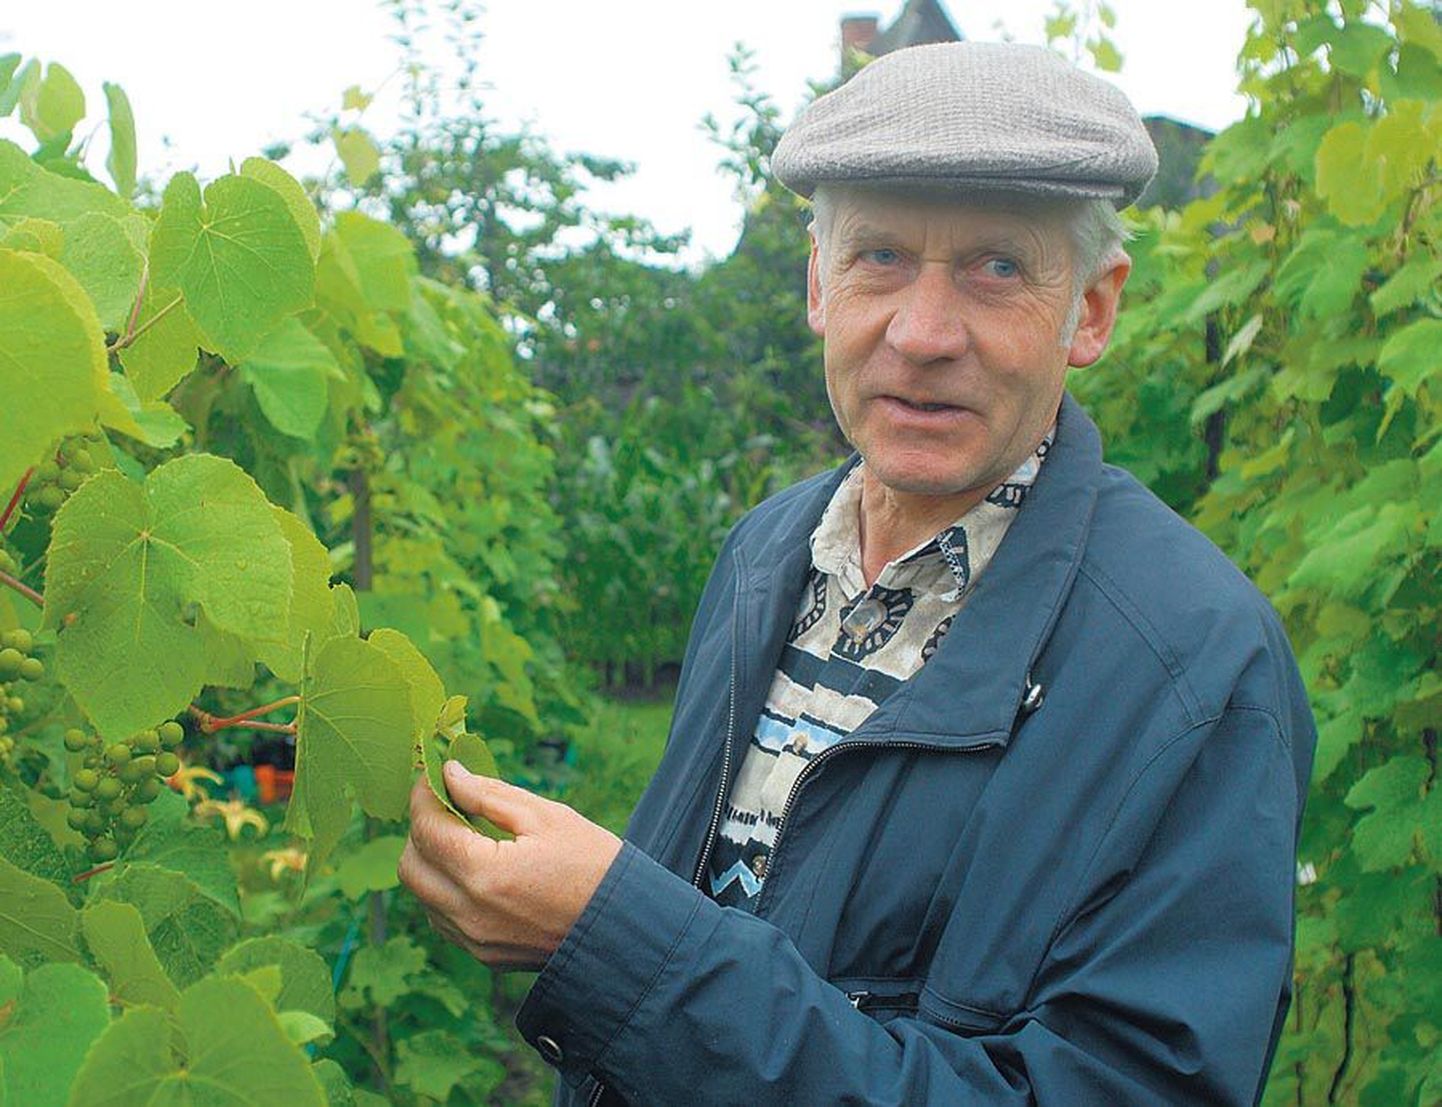 Räpina aianduskooli õppejõud Jaan Kivistik ütleb, et Eestis saab erinevalt lõunamaadest viinamarju kasvatada peaaegu ilma keemilisi taimekaitsevahendeid kasutamata, sest siin pole sedavõrd rohkesti haigusi ega kahjureid.